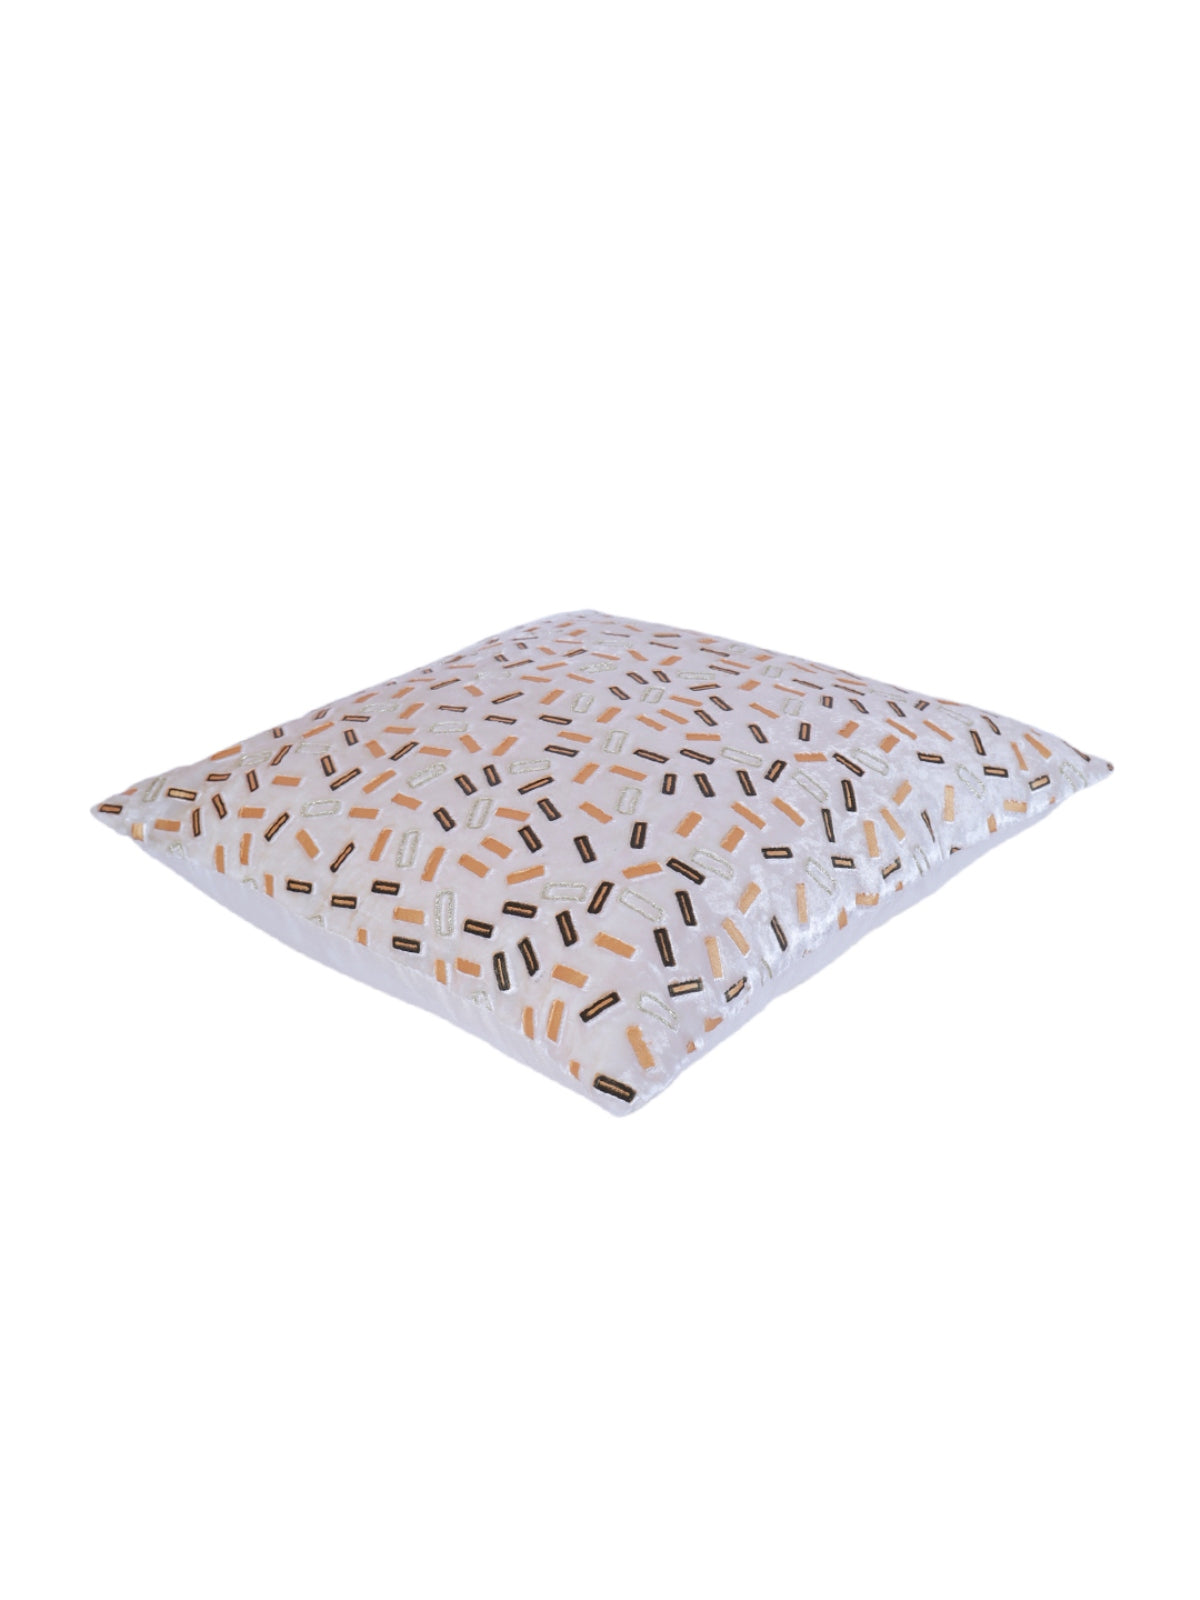 Velvet Geometric Designer Cushion Cover 16x16 Inche, Set of 5 - White